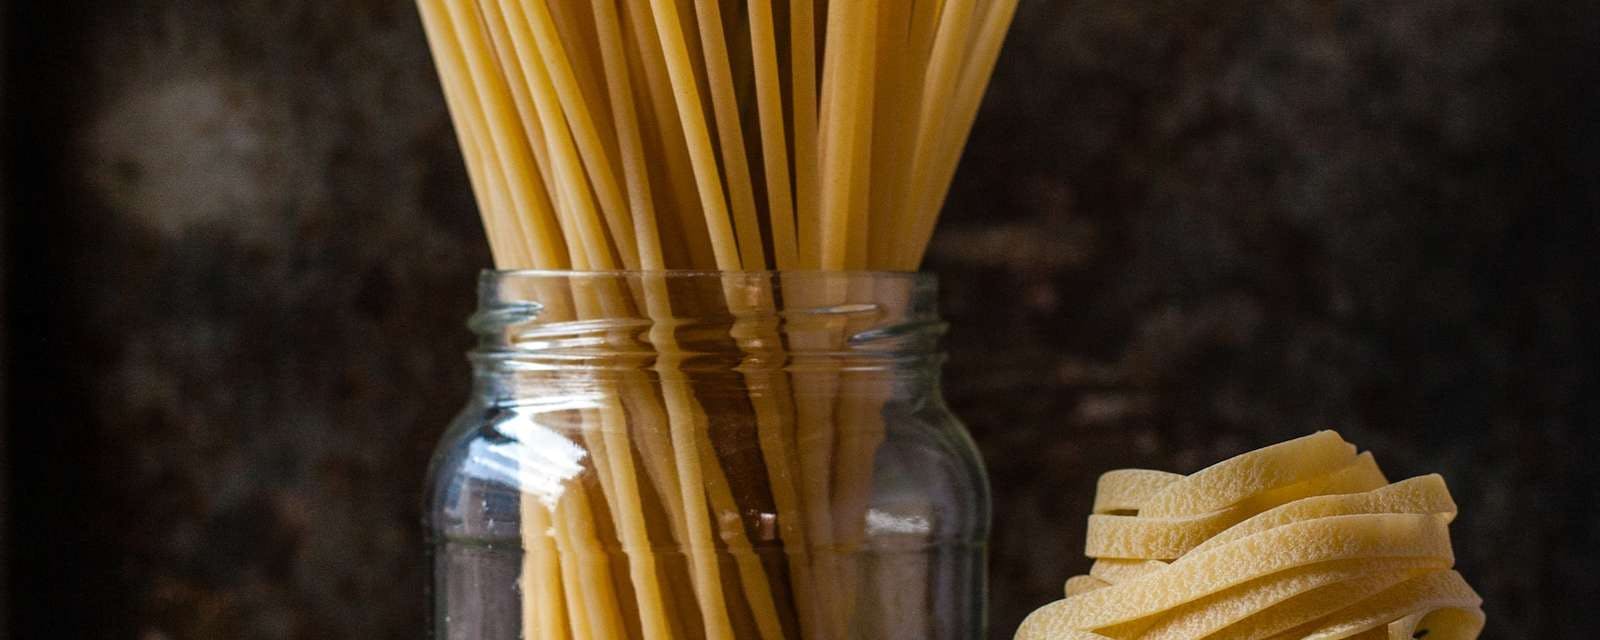 Verschiedene Pasta-Sorten in Glas und auf Tisch